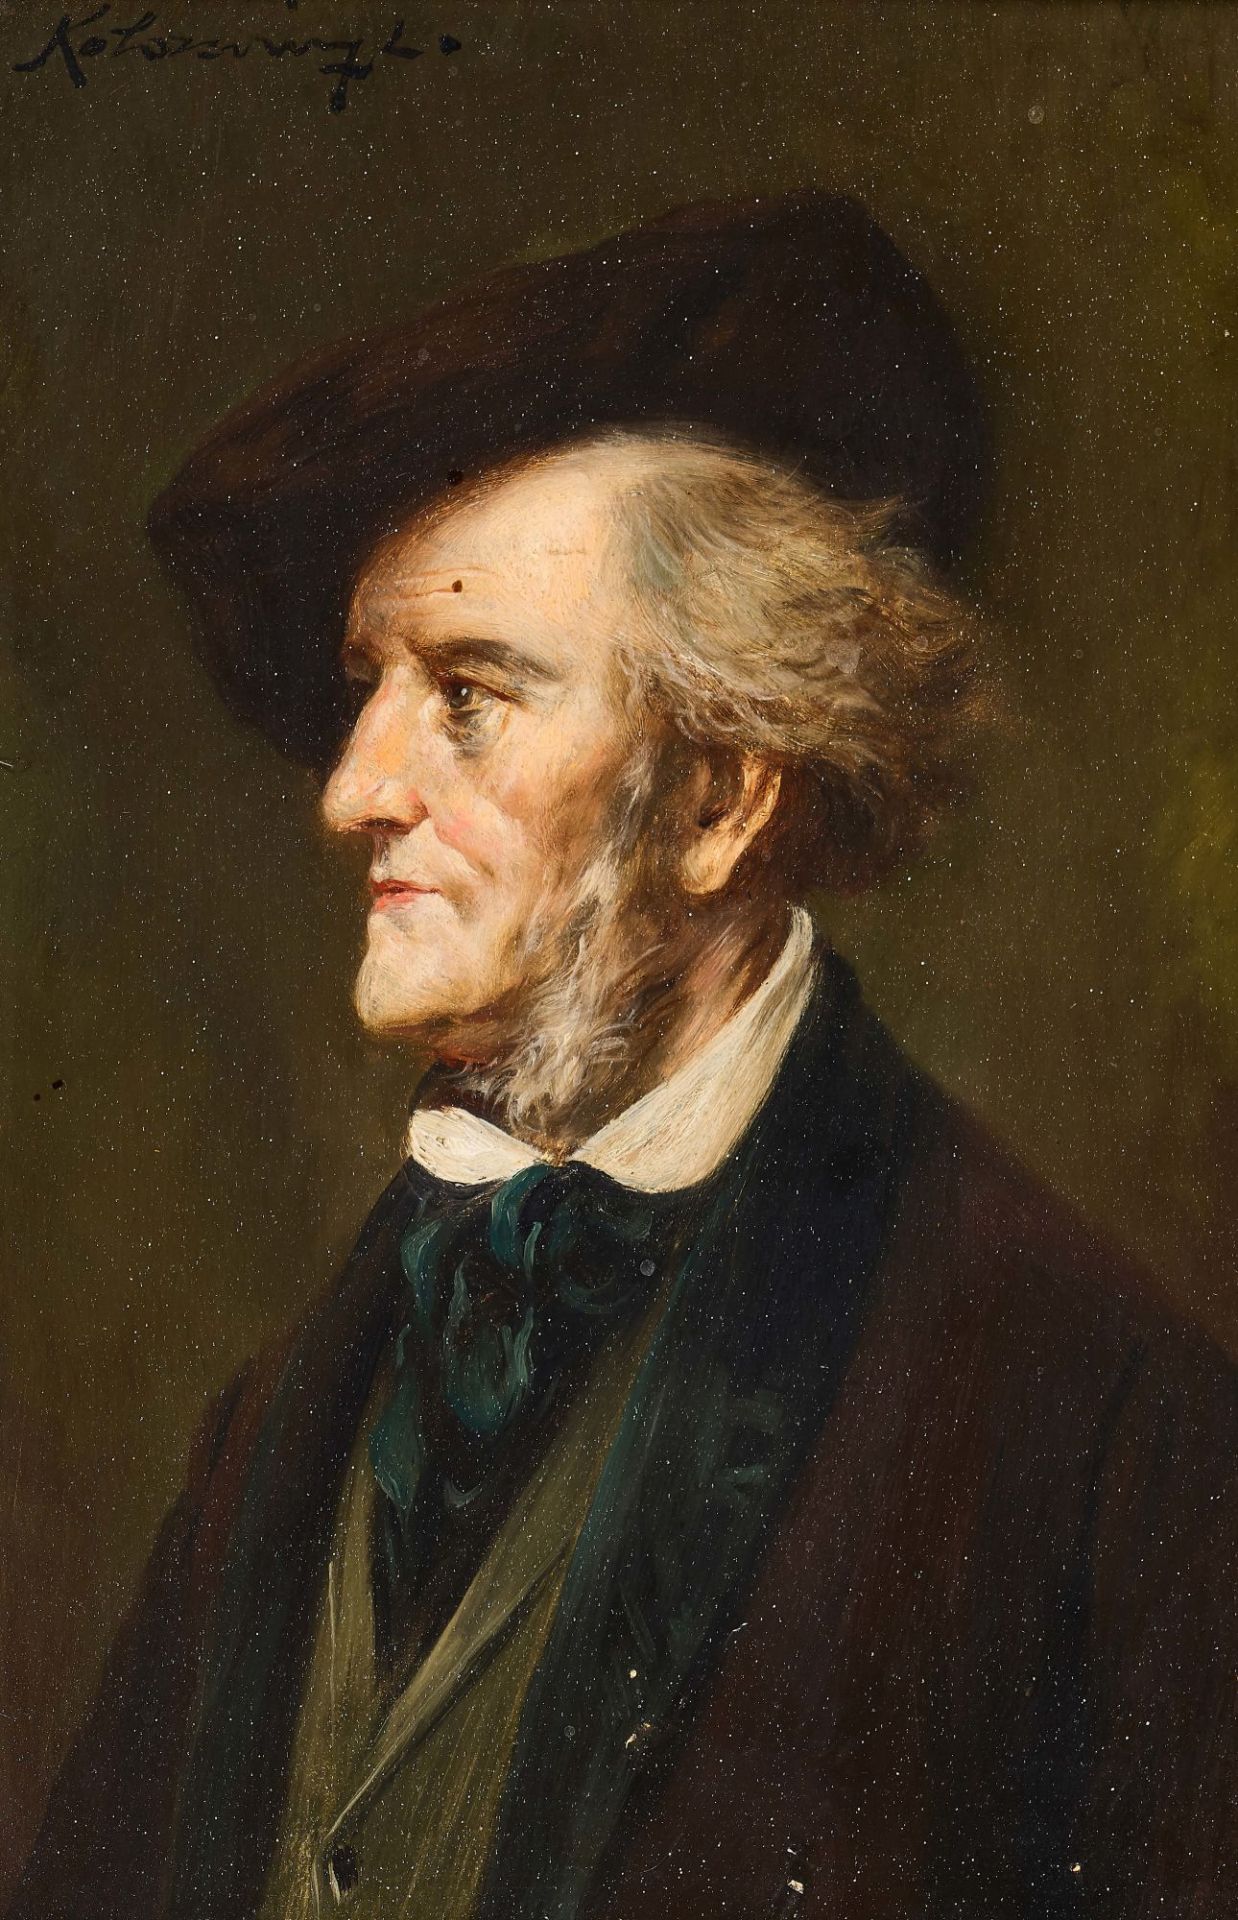 KOLOZSVÁRY, LAJOS: Porträt des Komponisten Richard Wagner.